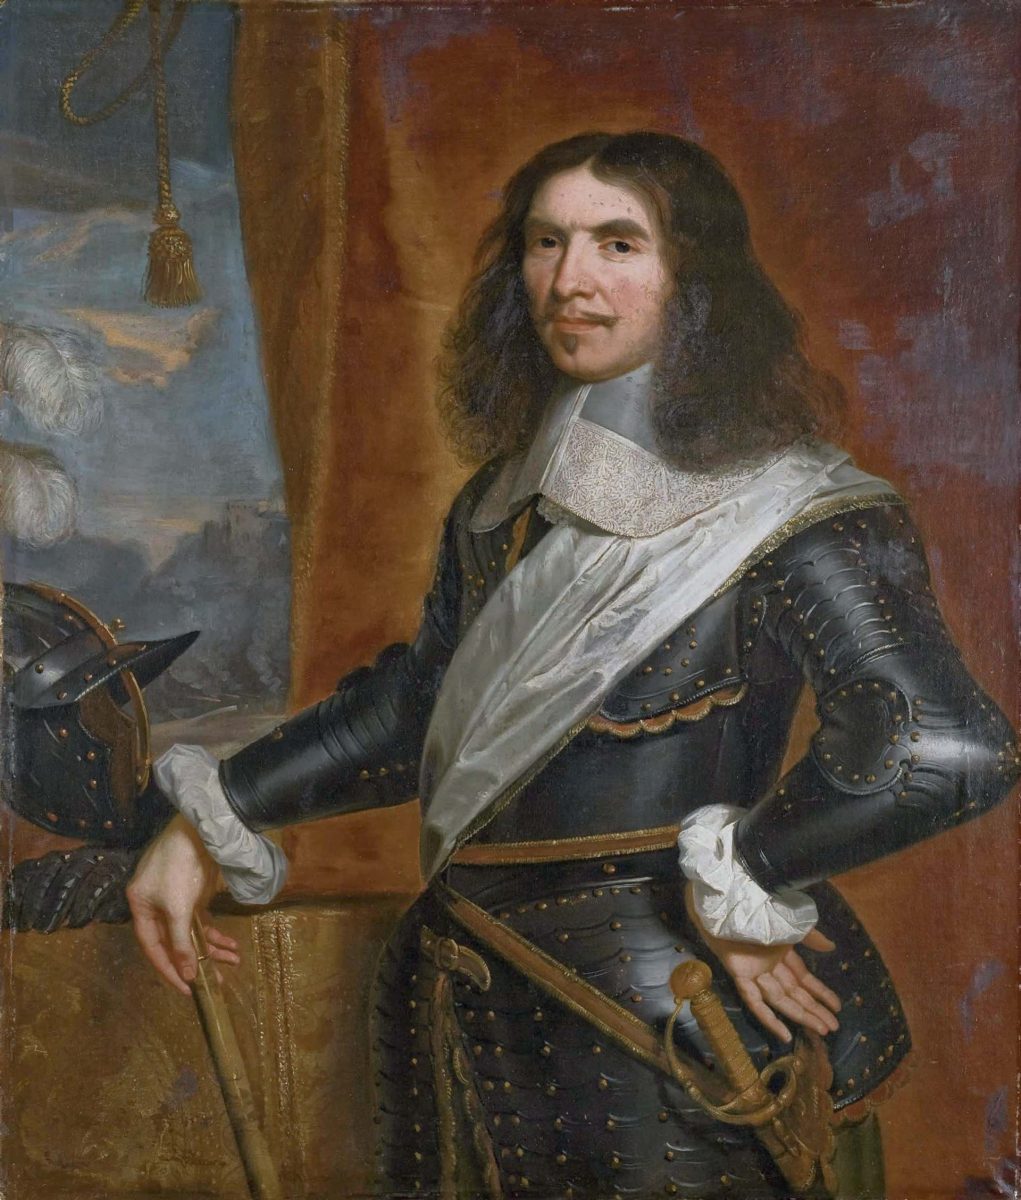 Henri de la Tour d'Auvergne, Vicomte von Turenne